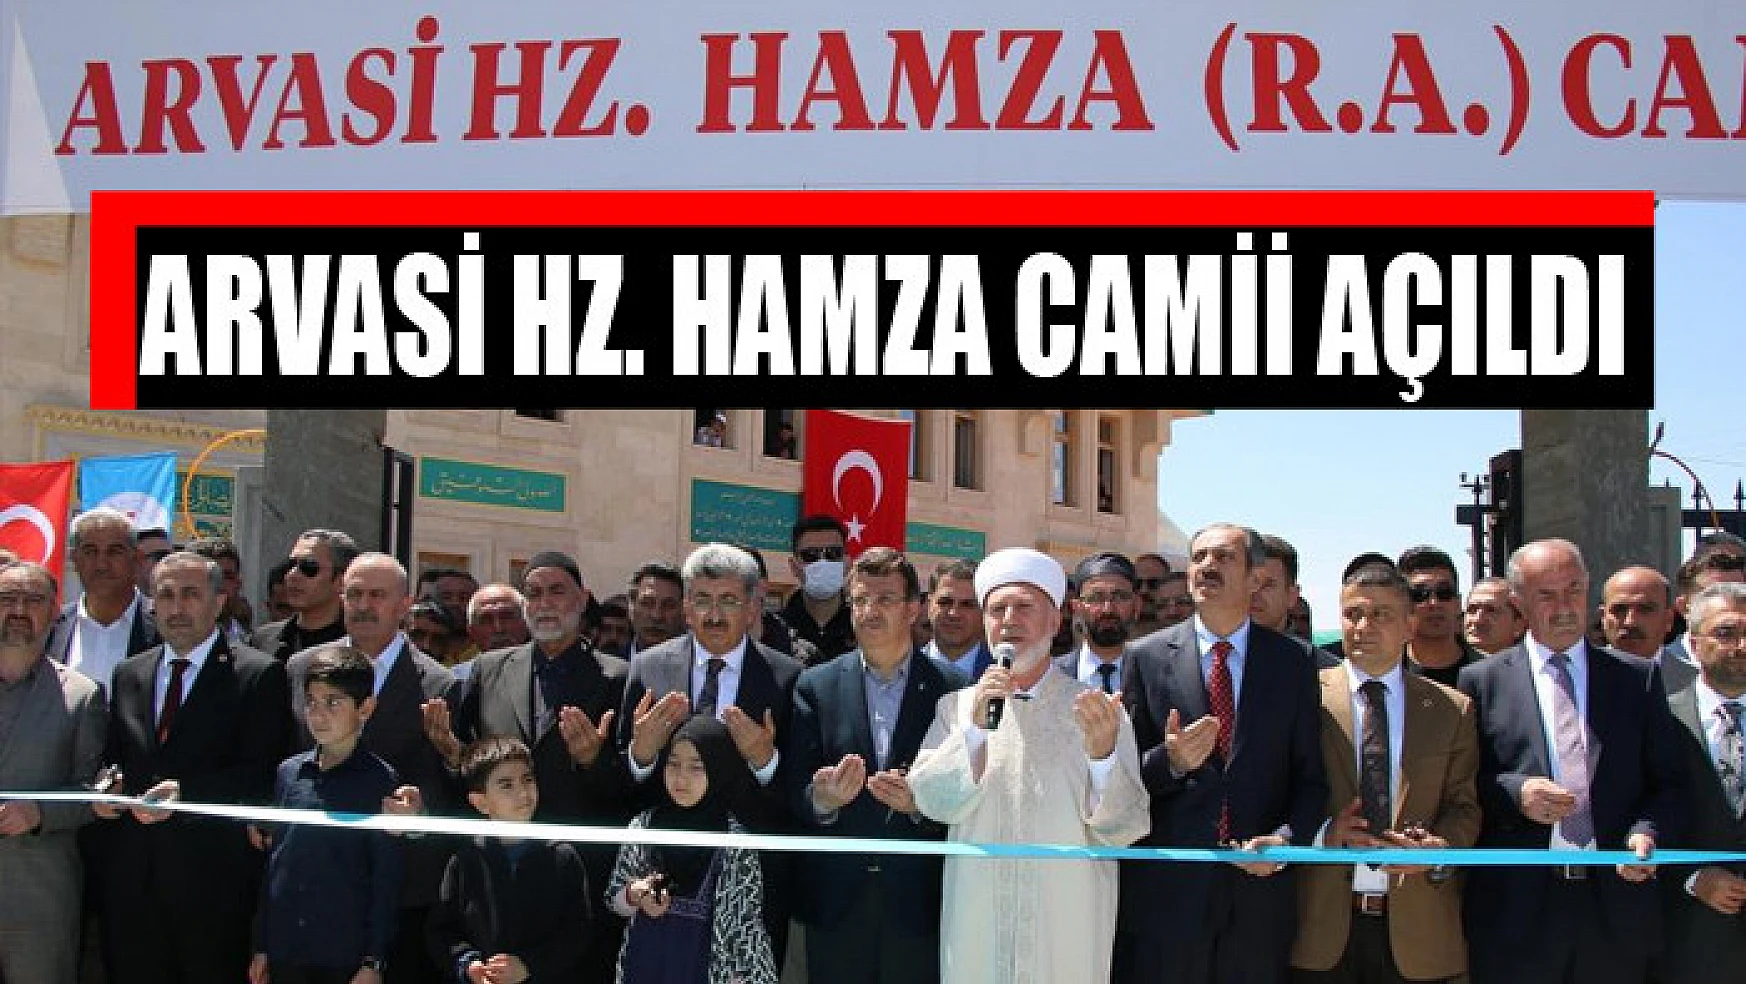 Arvasi Hz. Hamza Camii açıldı